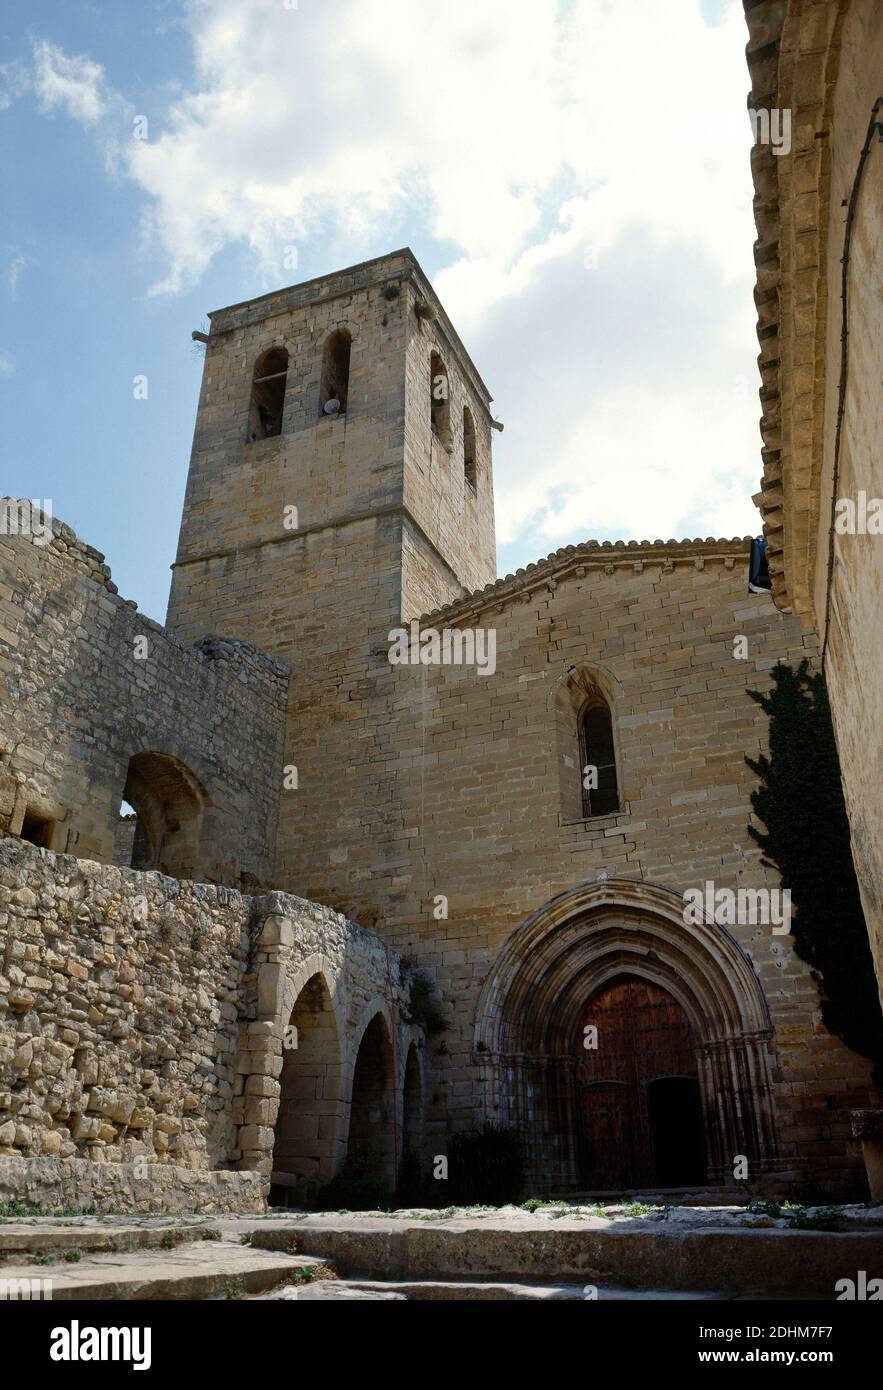 Spagna, Catalogna, provincia di Lleida, regione Urgell, Guimerà. La chiesa parrocchiale di Santa Maria. Fu costruito nel XIV secolo, con varie modifiche apportate nel corso dei secoli. Foto Stock